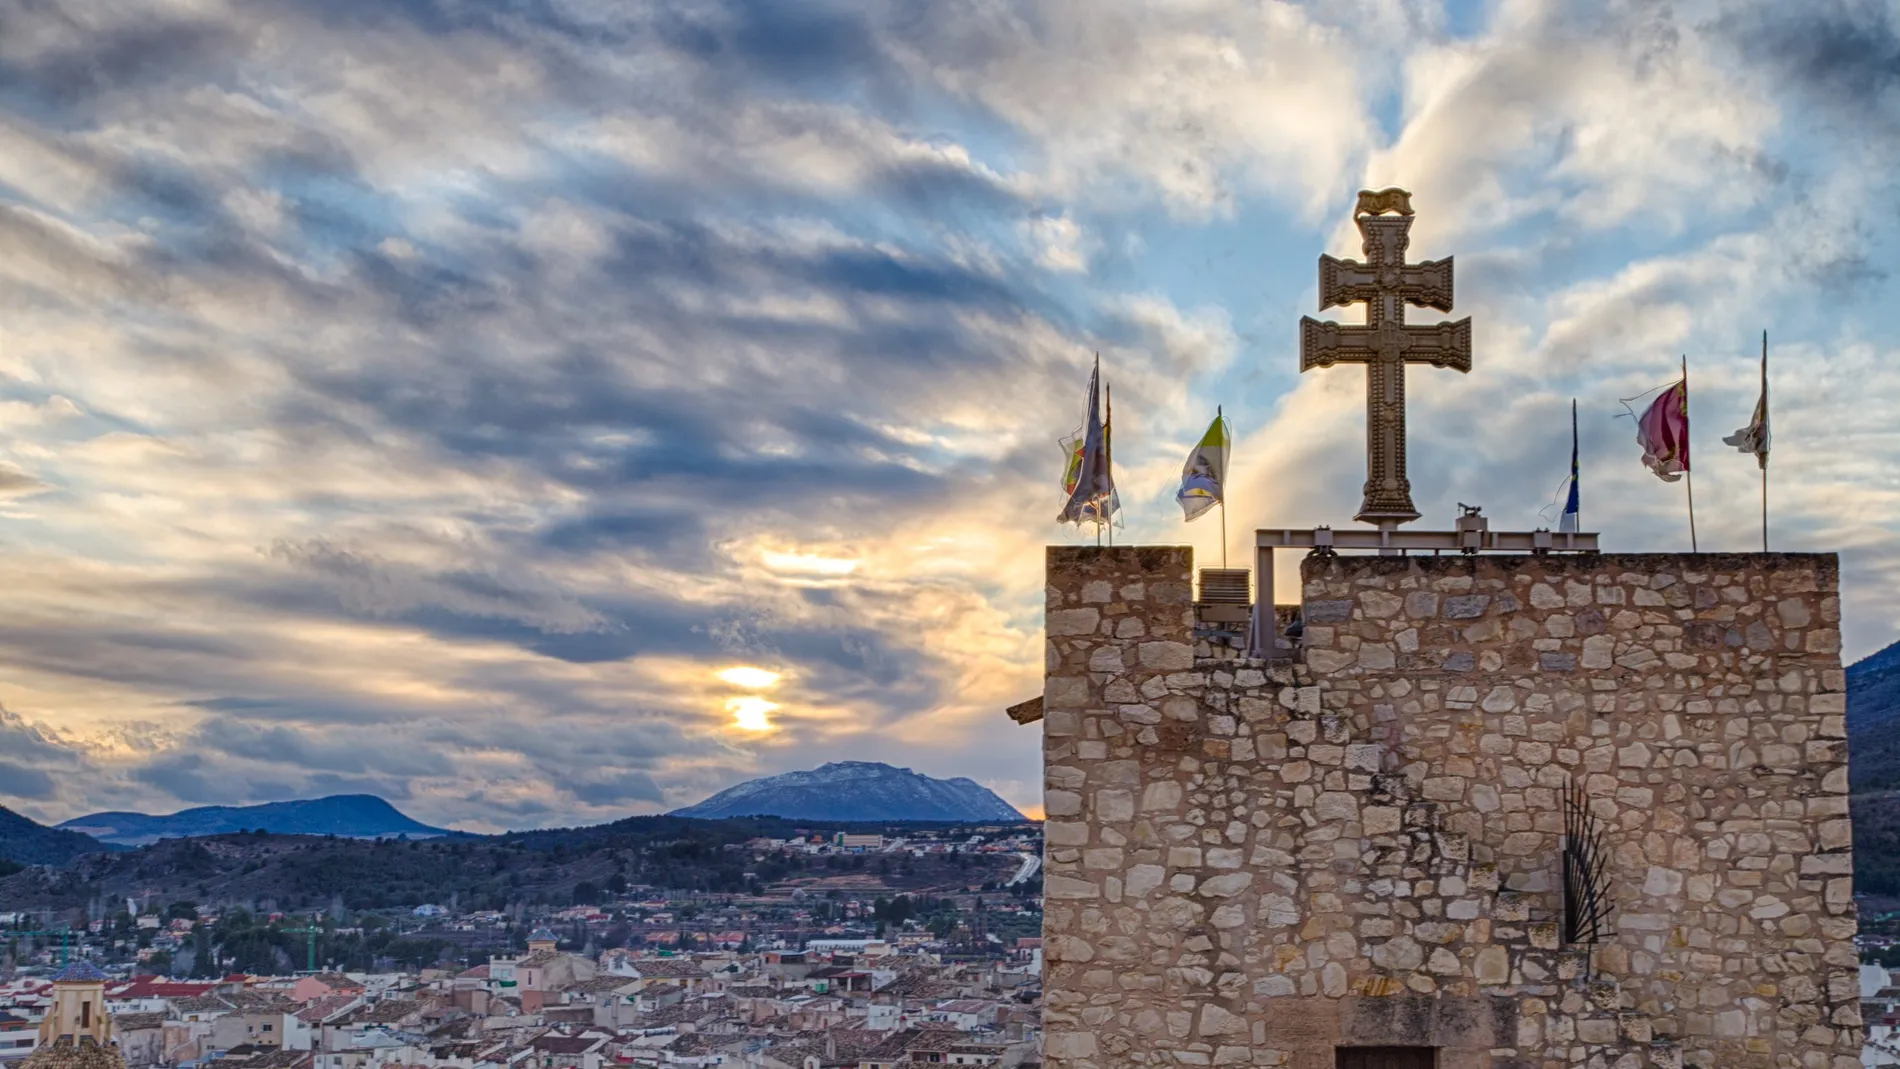 La Cruz de Caravaca, con su doble brazo, es uno de los símbolos religiosos más importantes del mundo